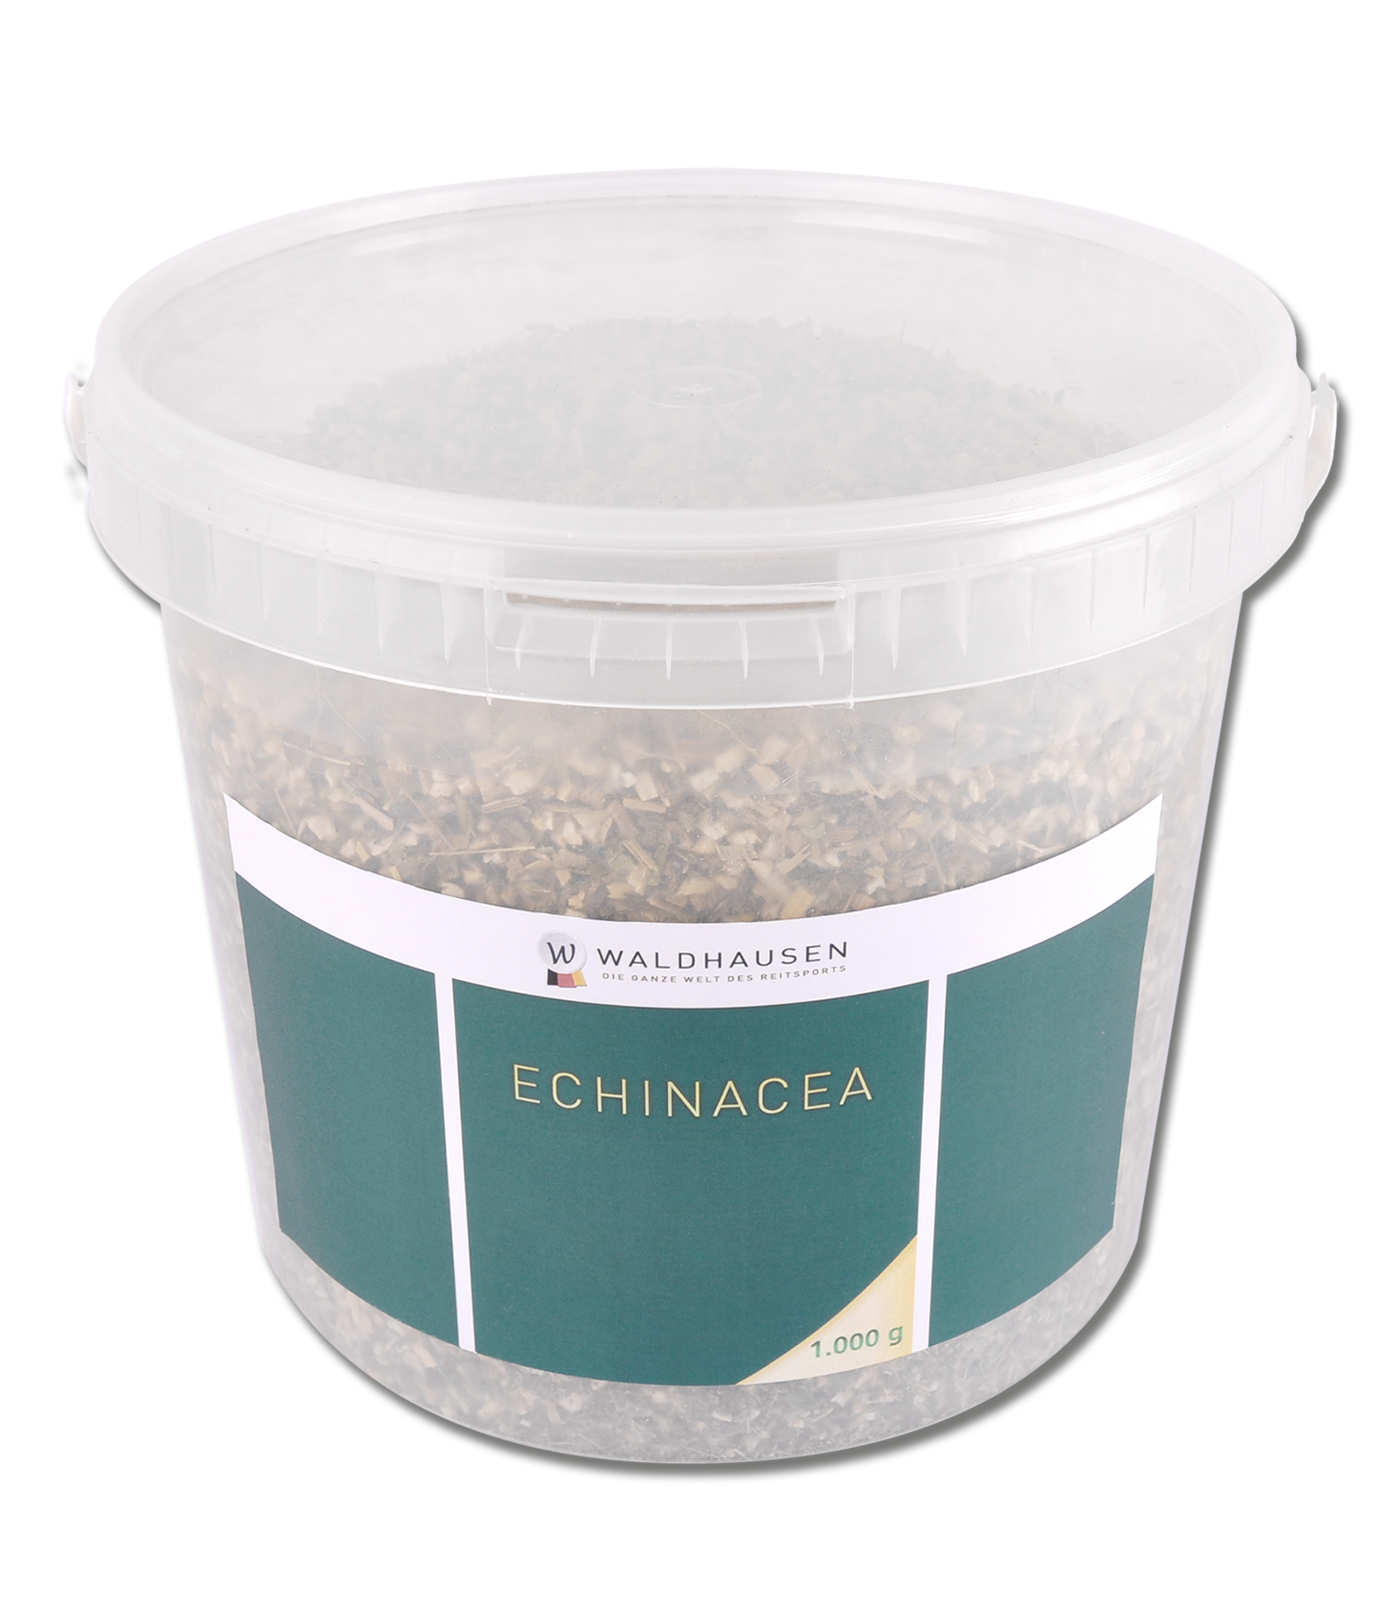 Waldhausen Echinacea – Gutes für das Immunsystem 1 kg